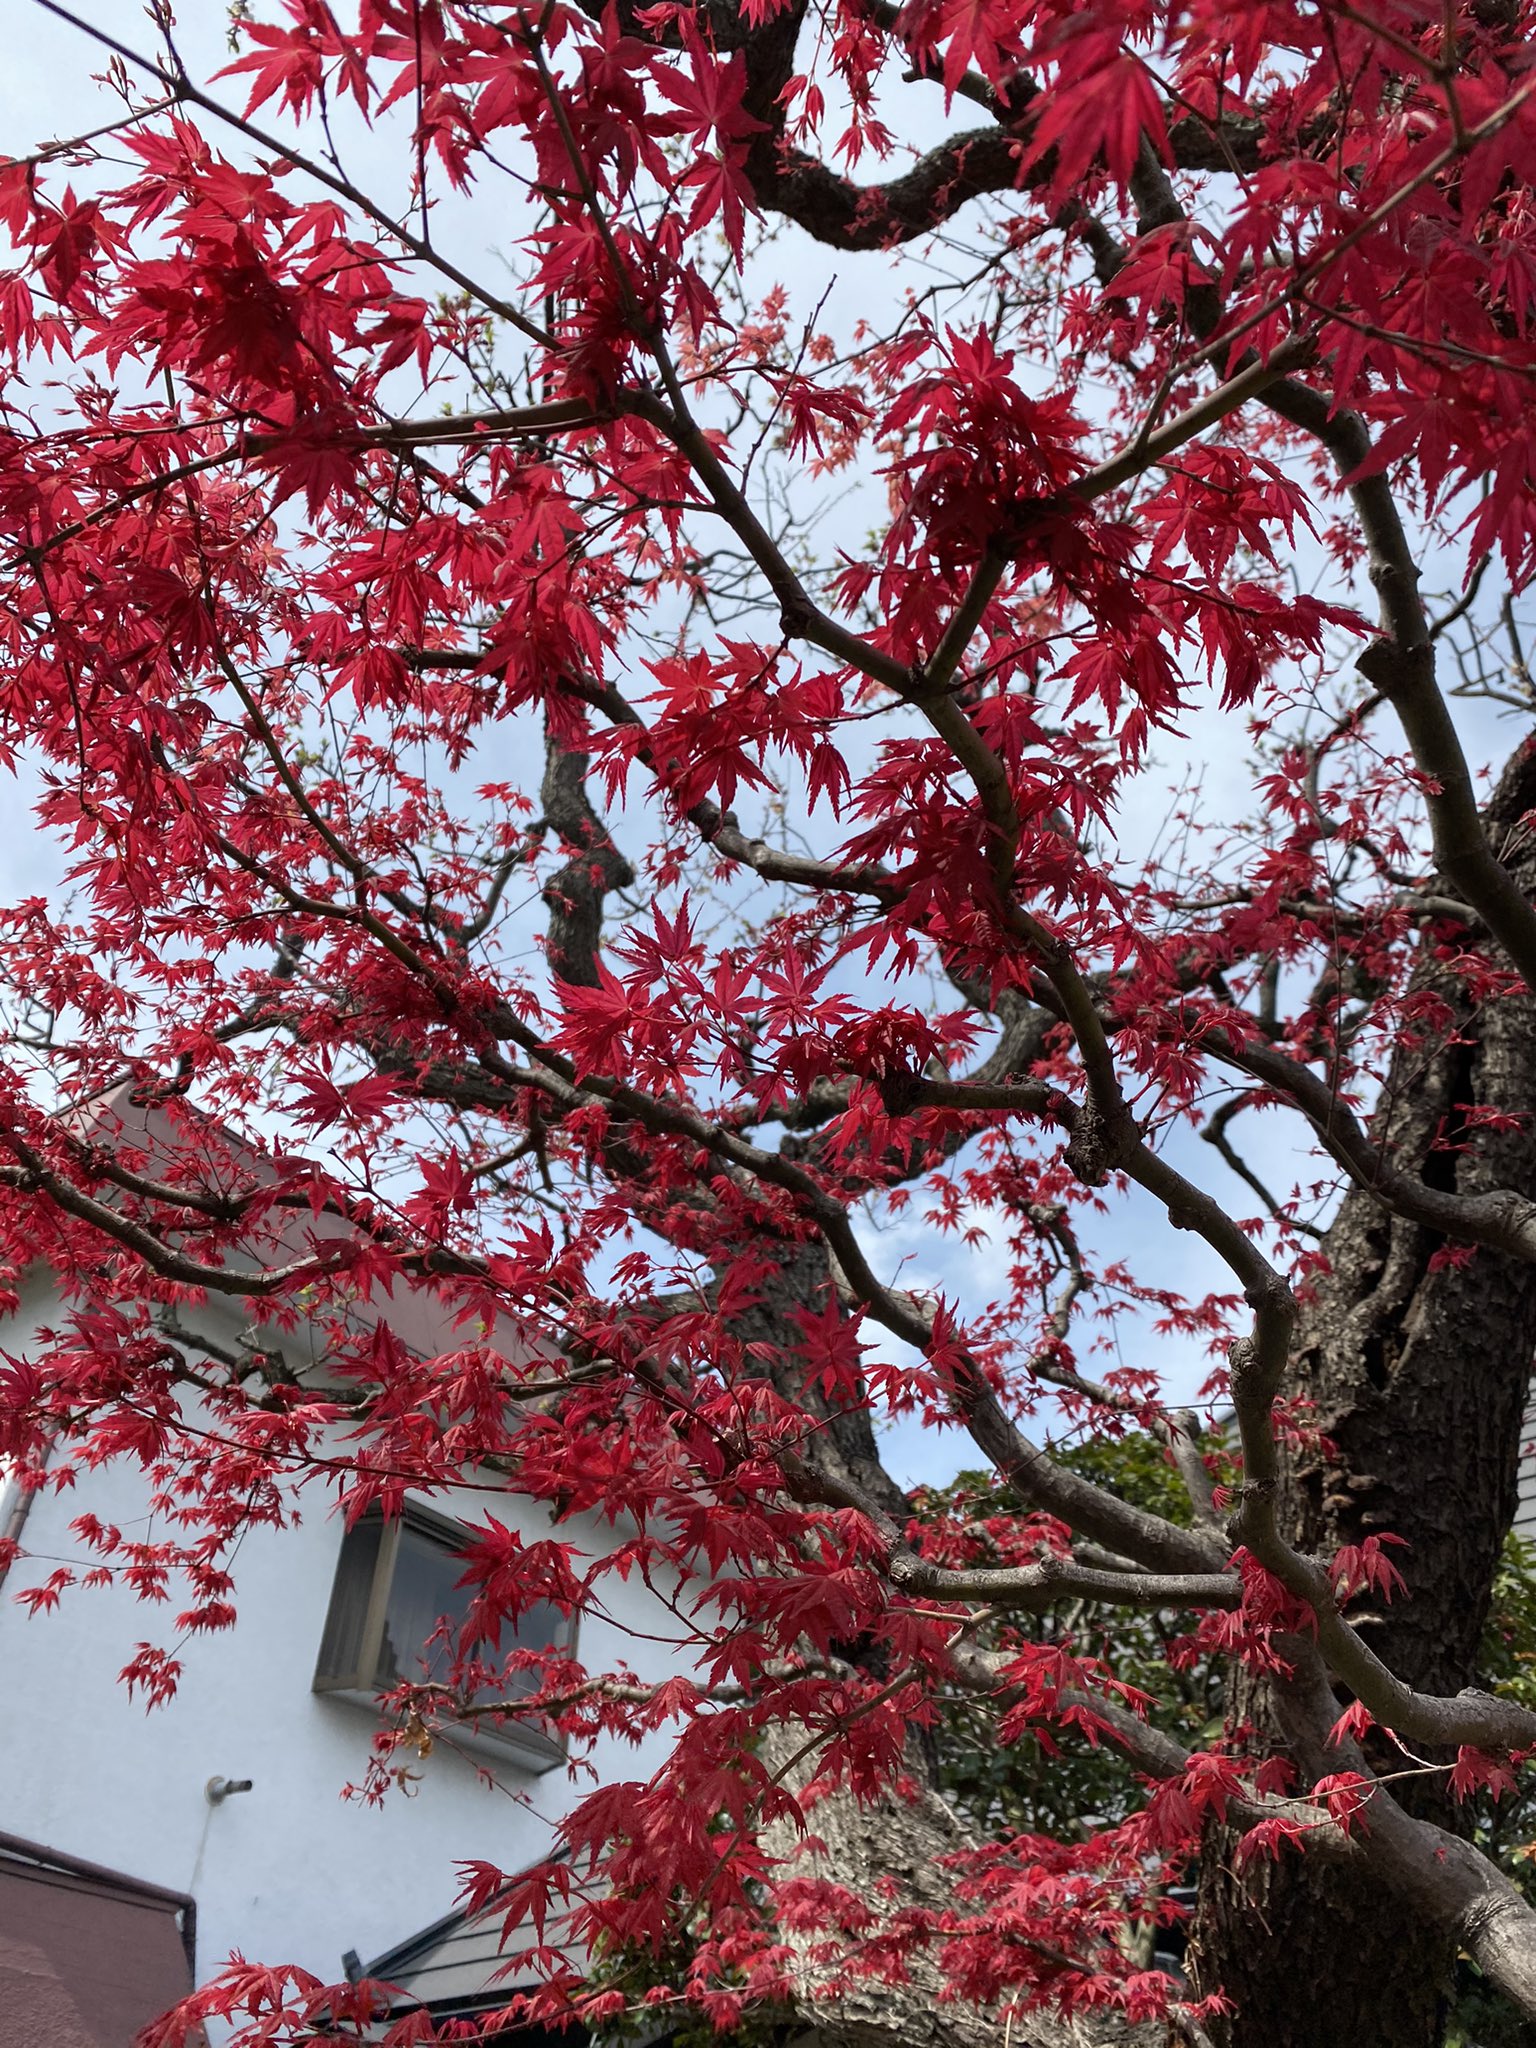 イマジン 仙台 石橋屋 のイロハモミジ いろは紅葉 と しだれ桜 この時期の仙台の風物詩です ここでは 春にモミジが赤く染まります 春のイロハモミジいいですよね秋とは また違う趣があります 花好きさんと繋がりたい イロハモミジ 仙台